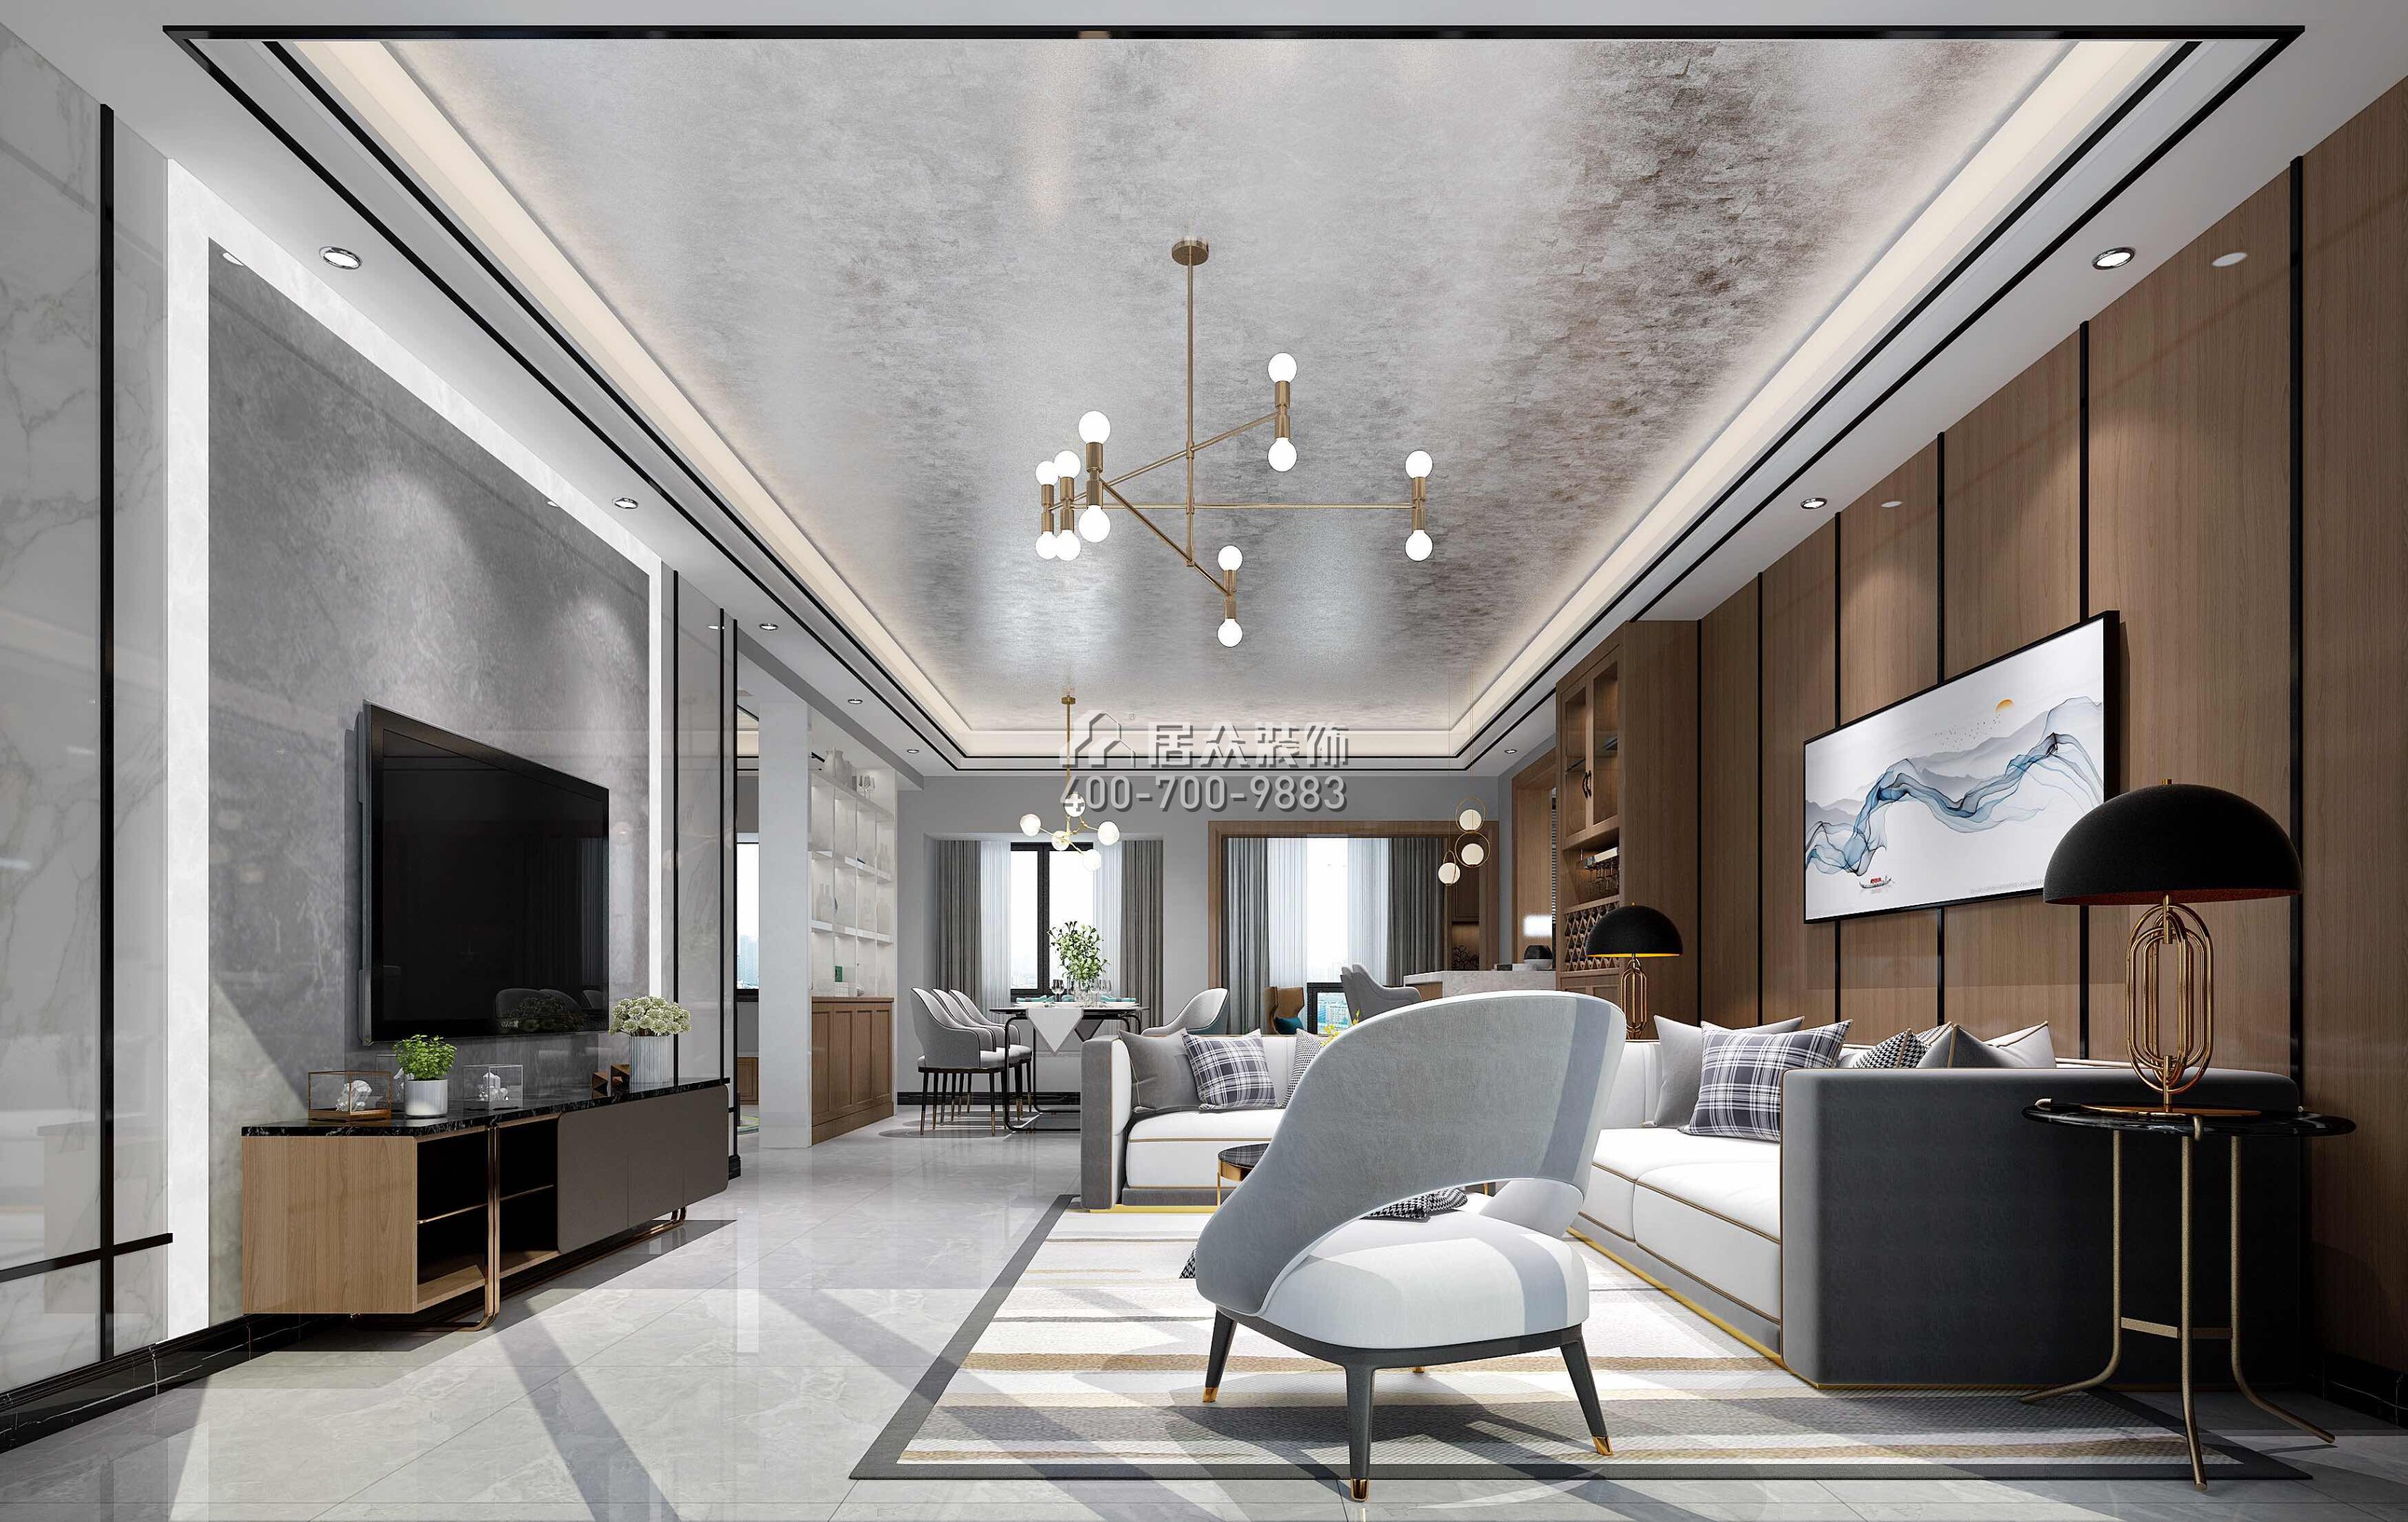 星河丹堤152平方米现代简约风格平层户型客厅装修效果图